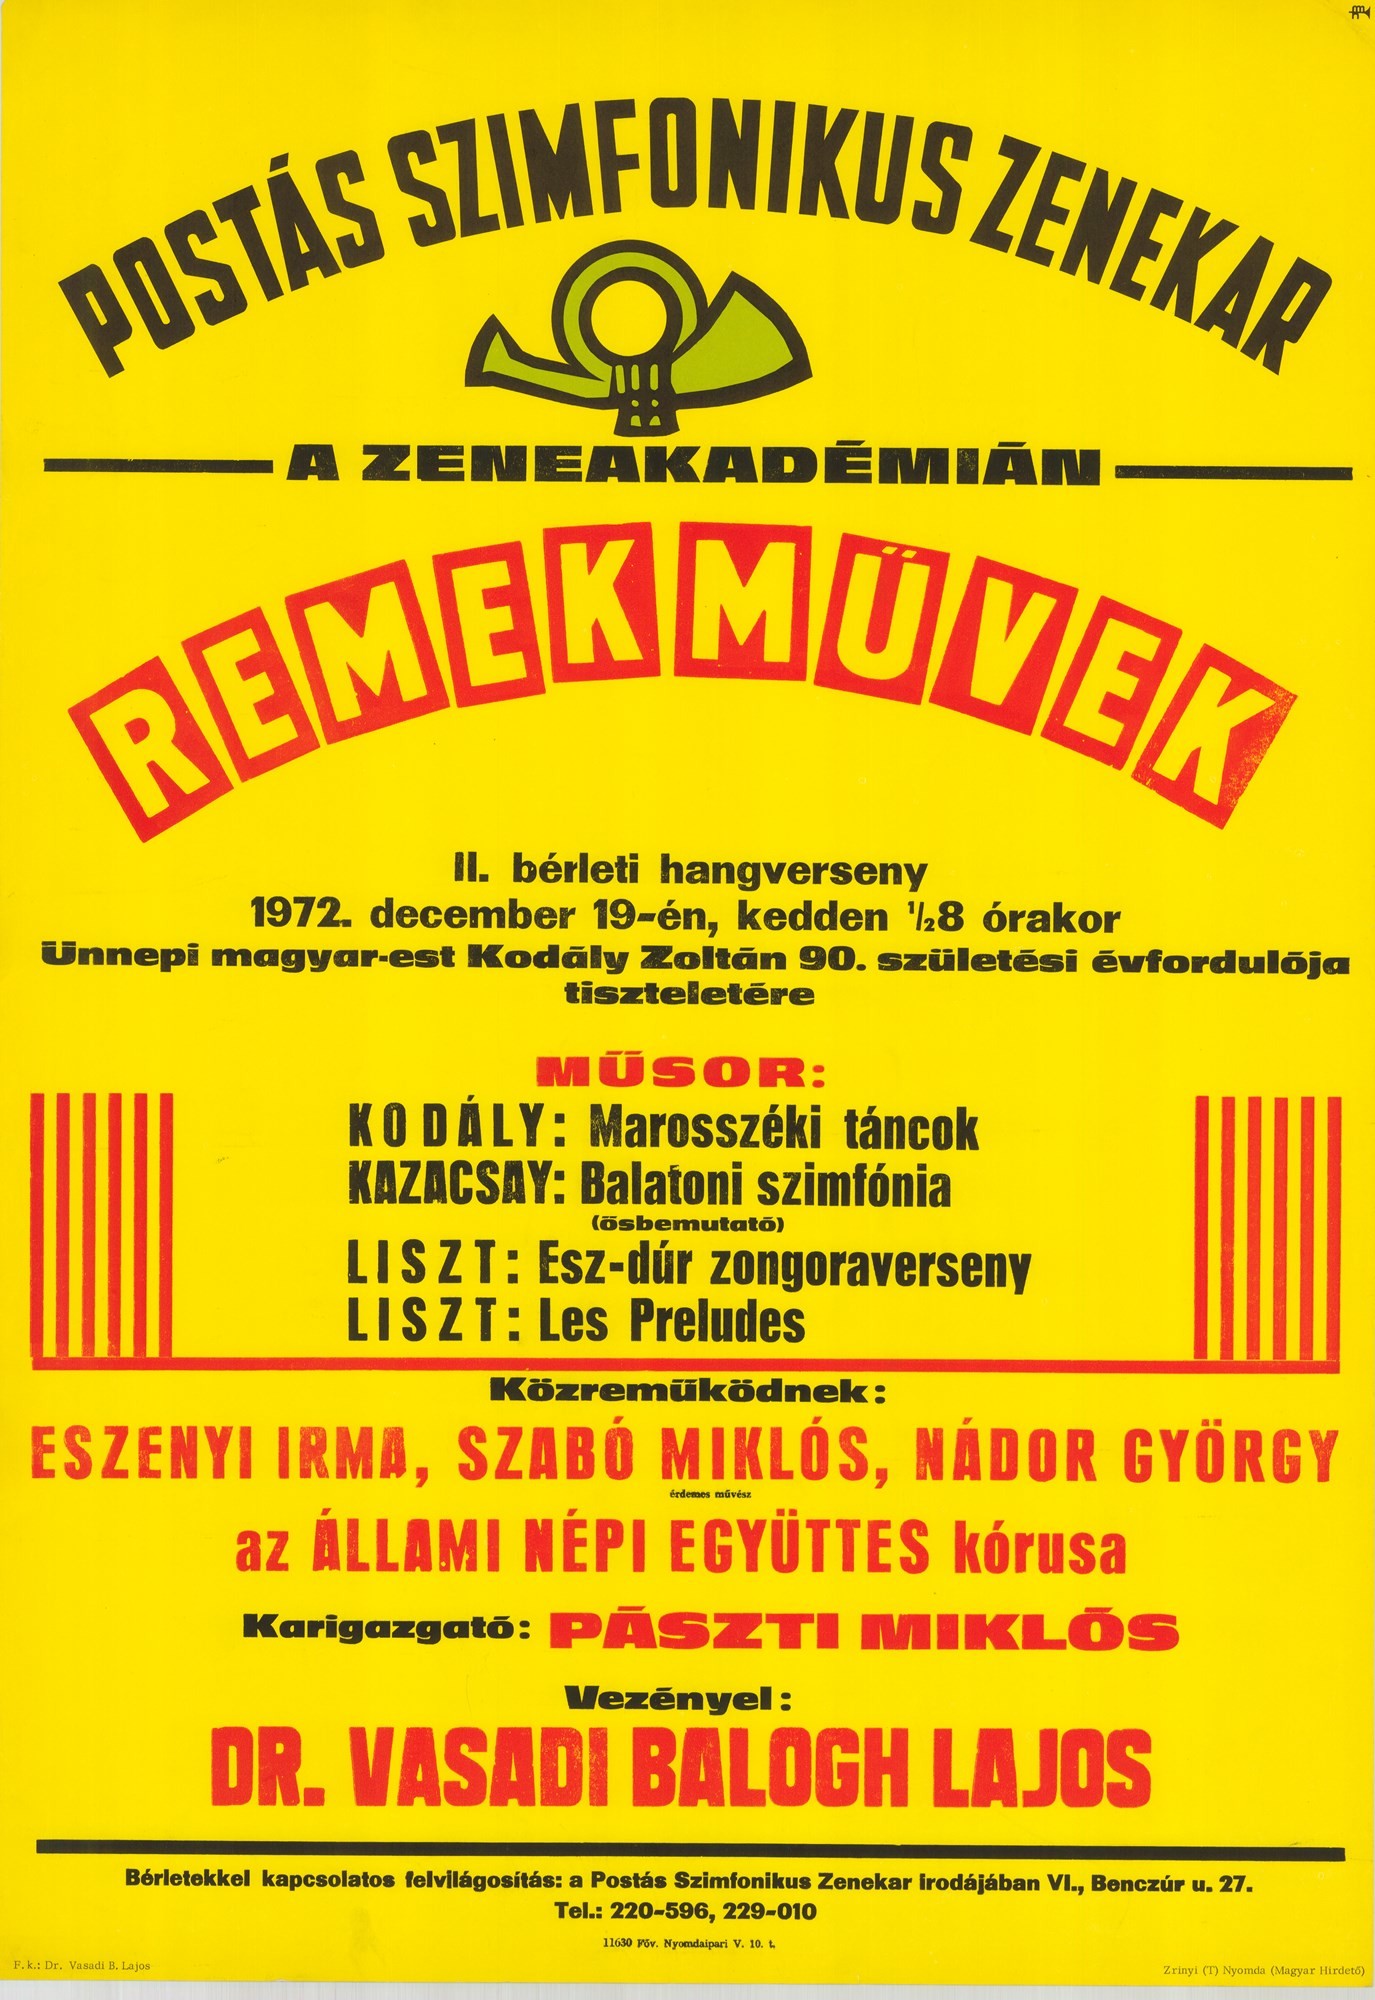 Plakát - Postás Szimfonikus Zenekar a Zeneakadémián, 1972 (Postamúzeum CC BY-NC-SA)